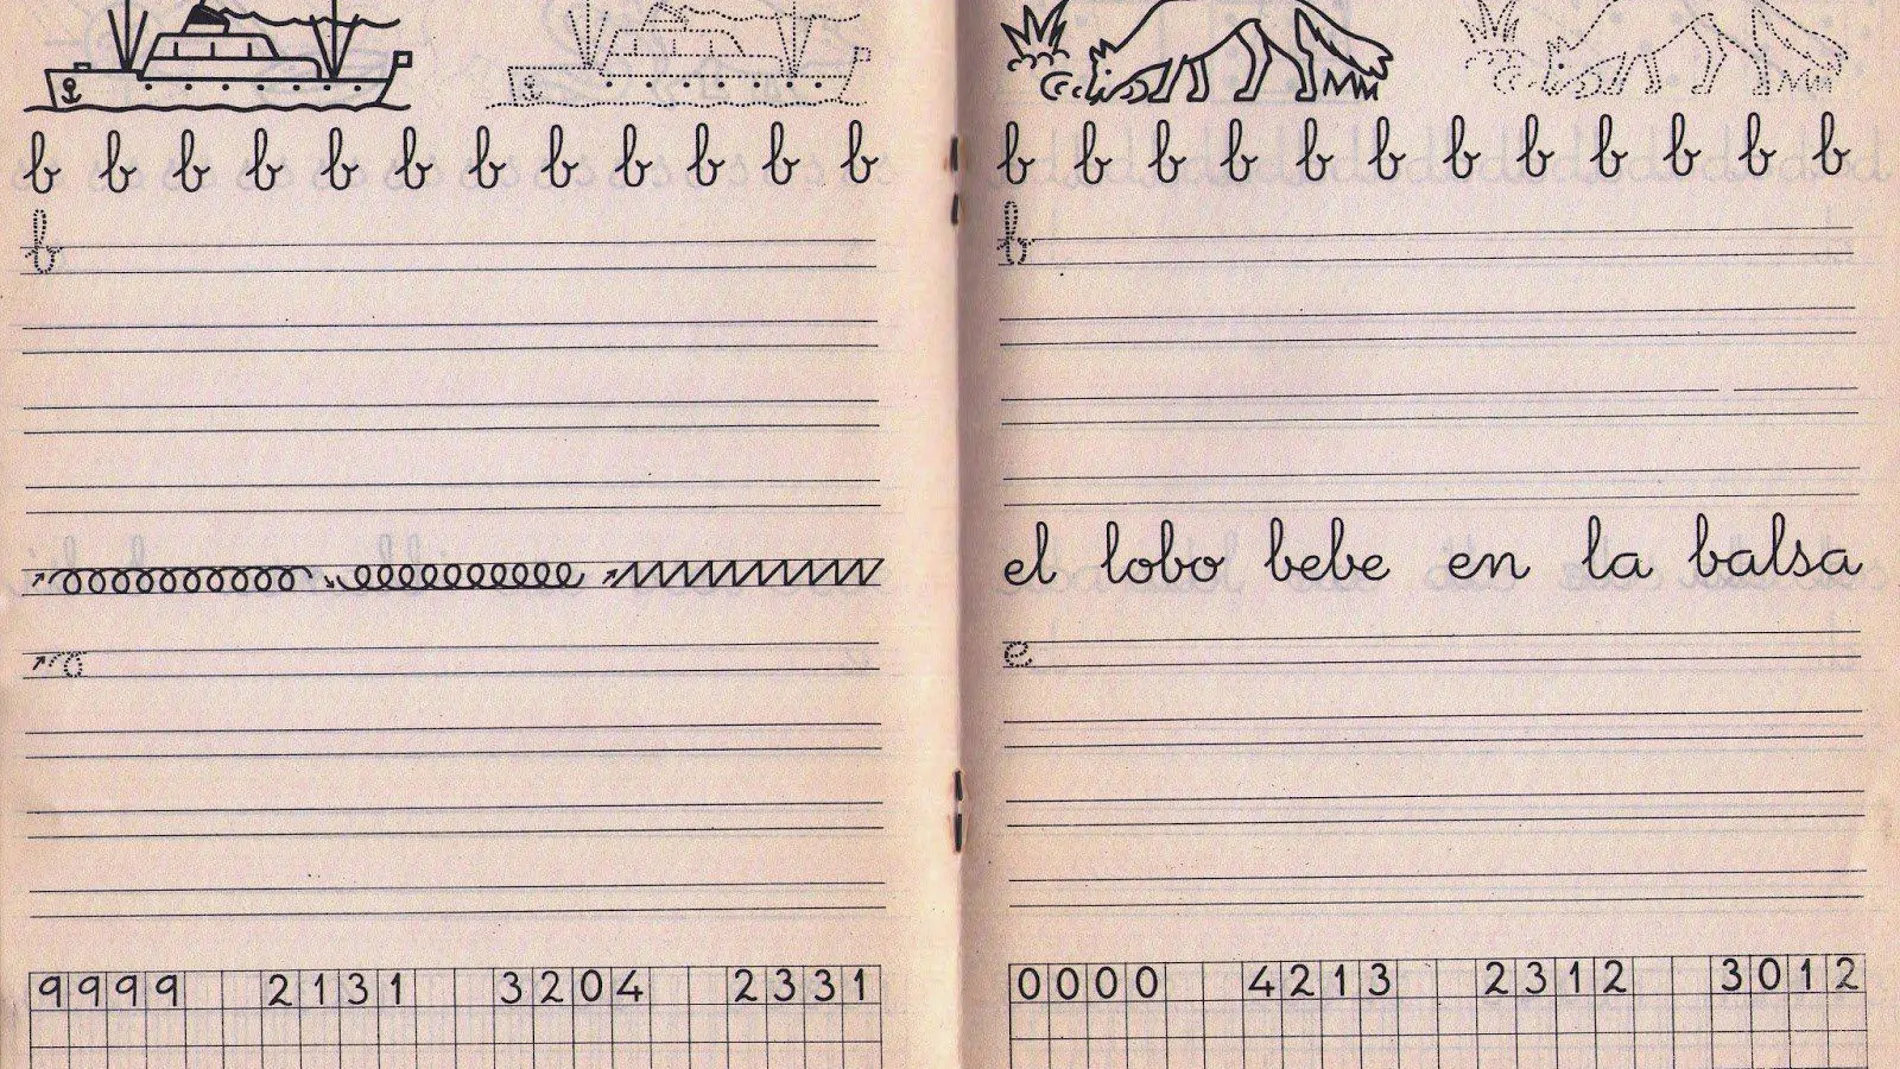 Los cuadernos Rubio siempre han enseñado tanto a escribir como a cuidar el lenguaje